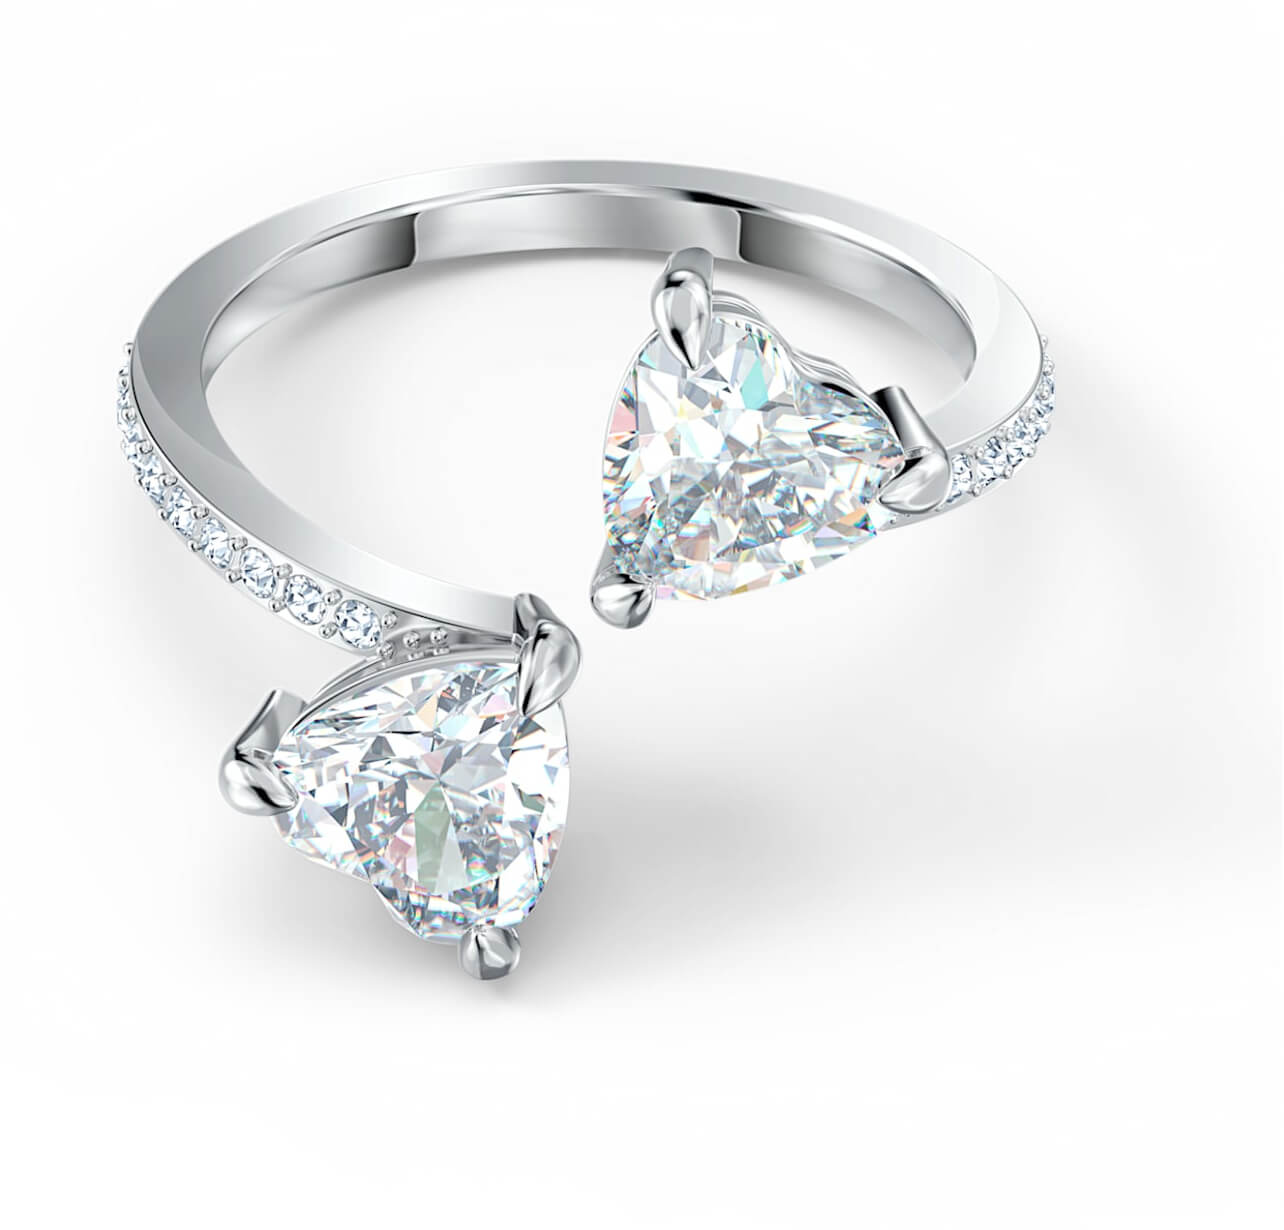 Swarovski Luxusní otevřený prsten s krystaly Swarovski Attract Soul 5535191 60 mm